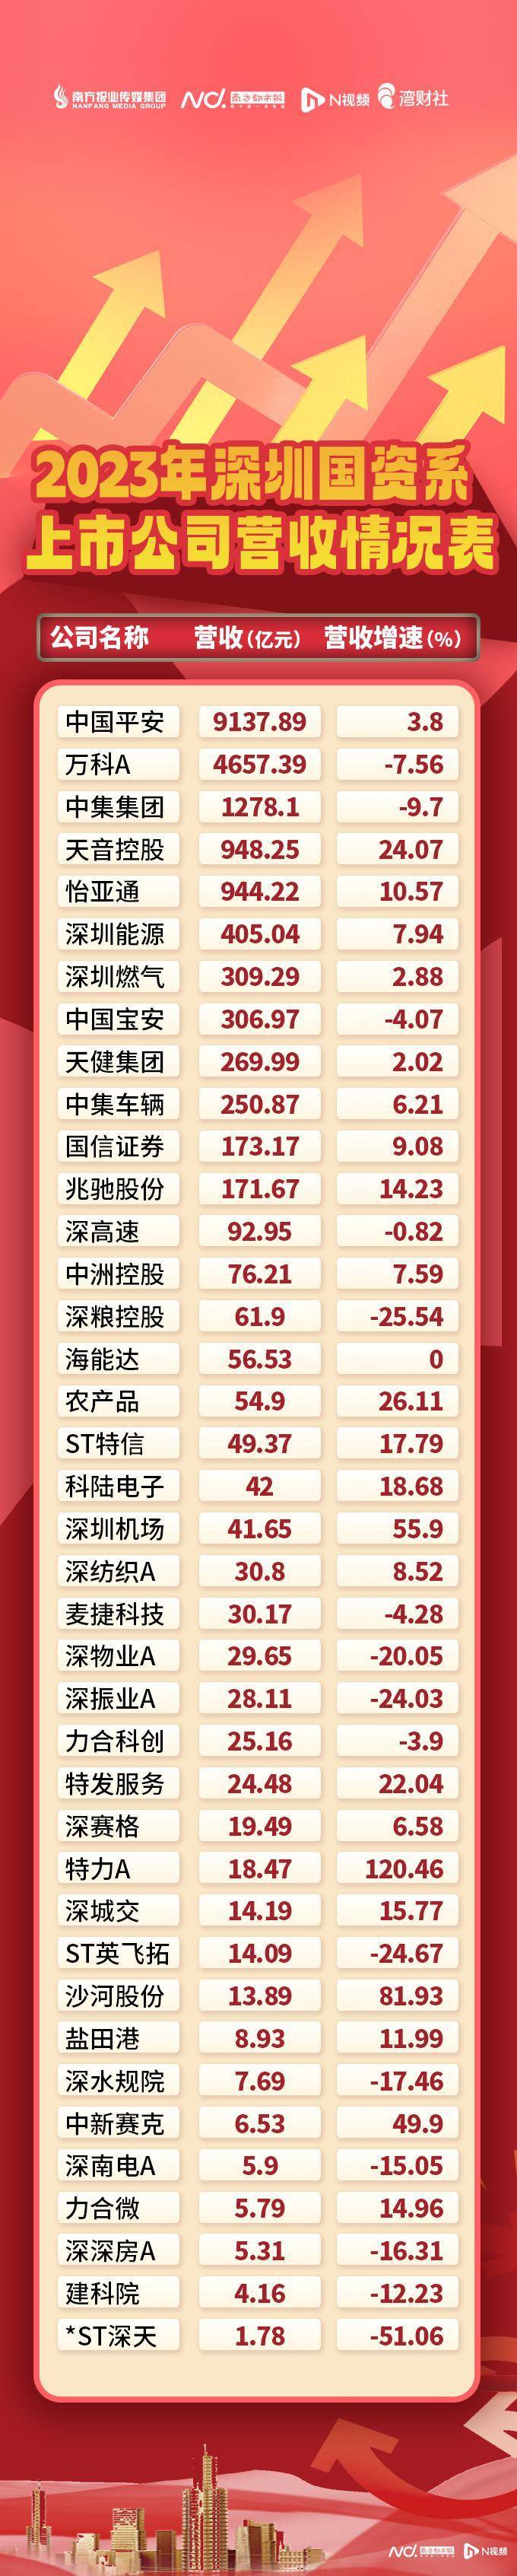 深圳国资系a股上市公司业绩:12家营收超百亿,谁赚最多?